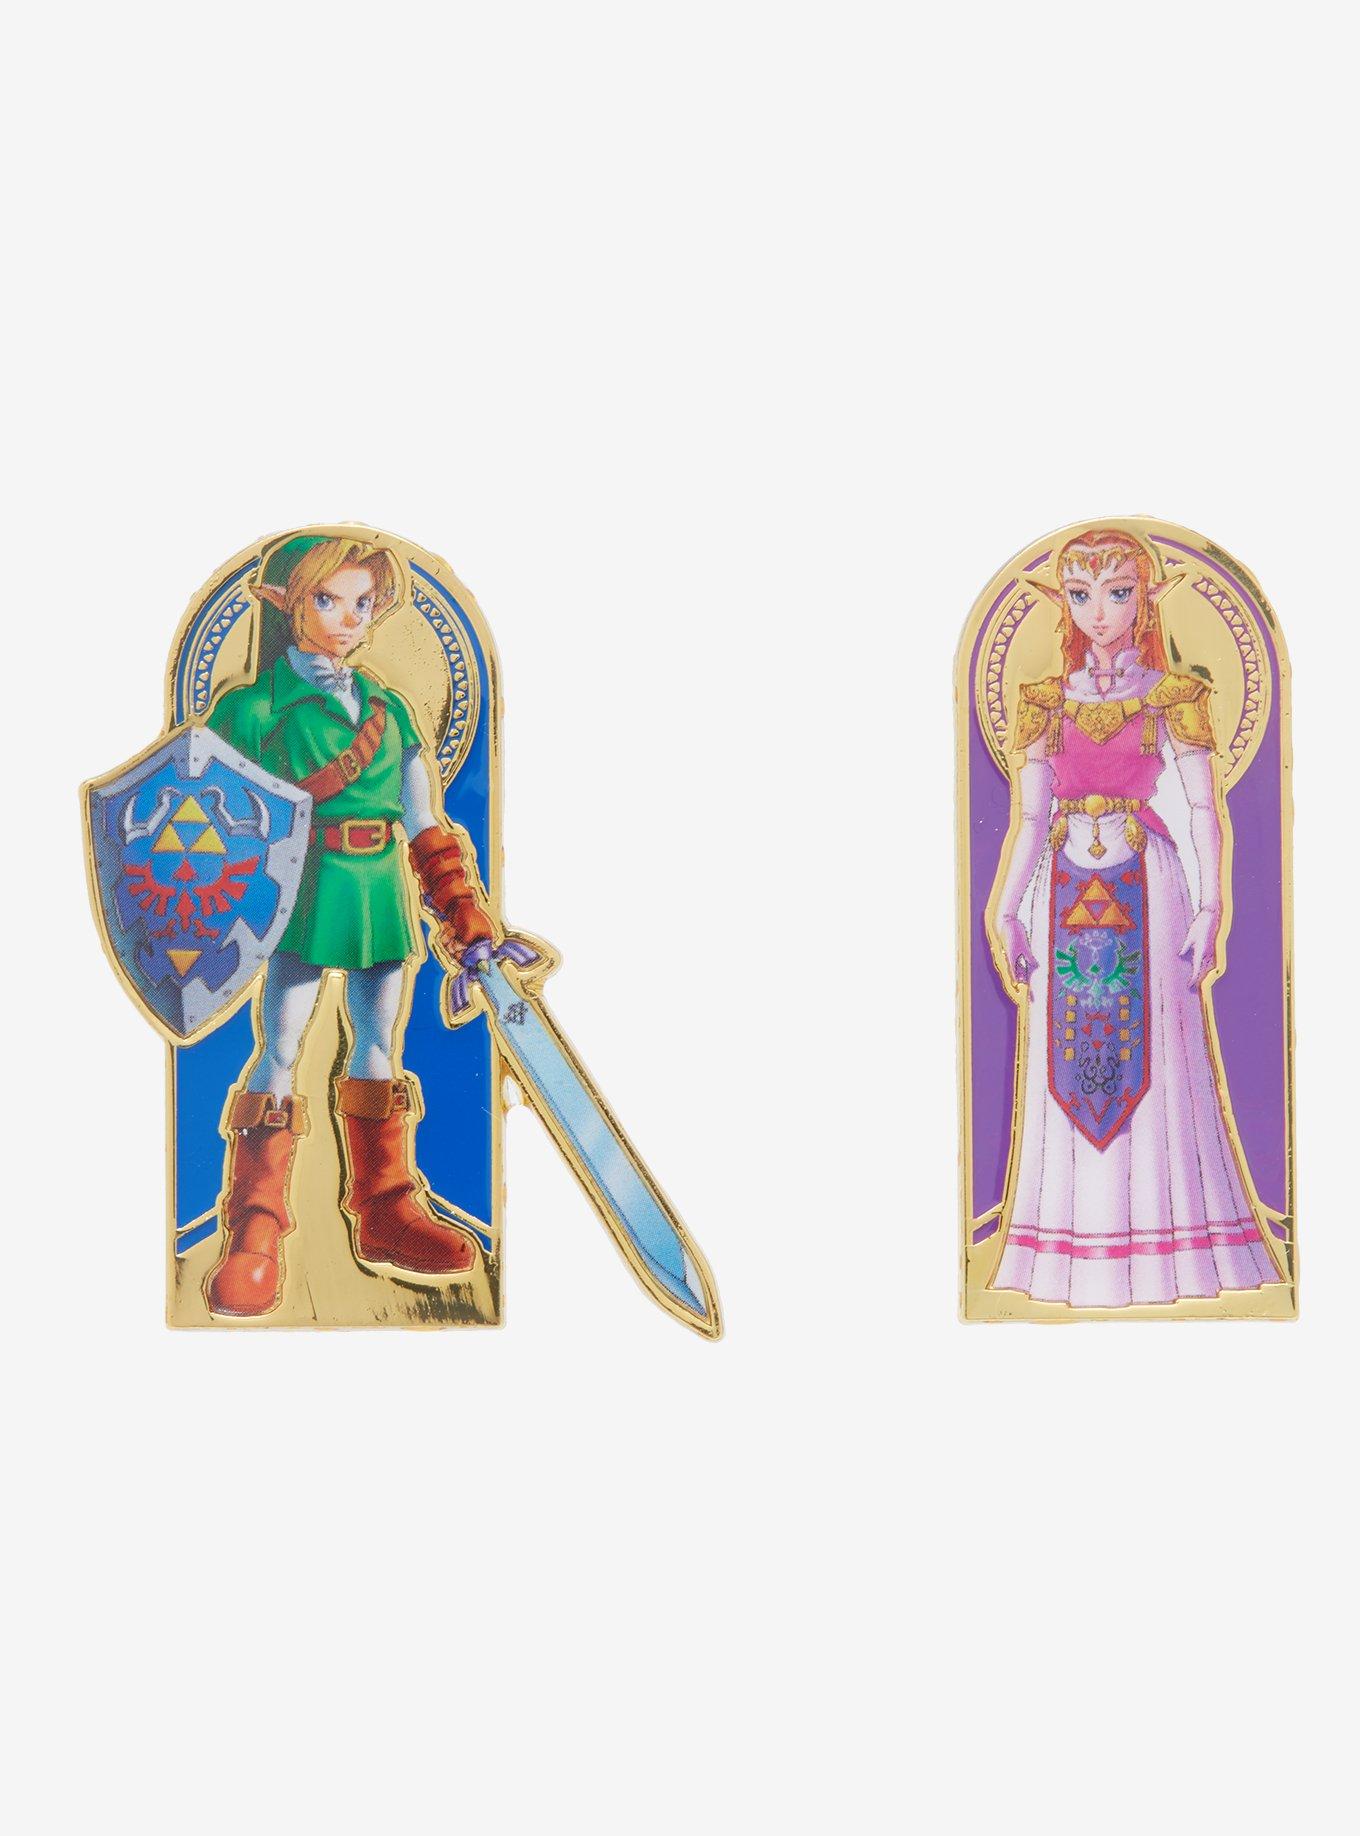 Link Portrait - Legend of Zelda: Ocarina of Time Official Nintendo